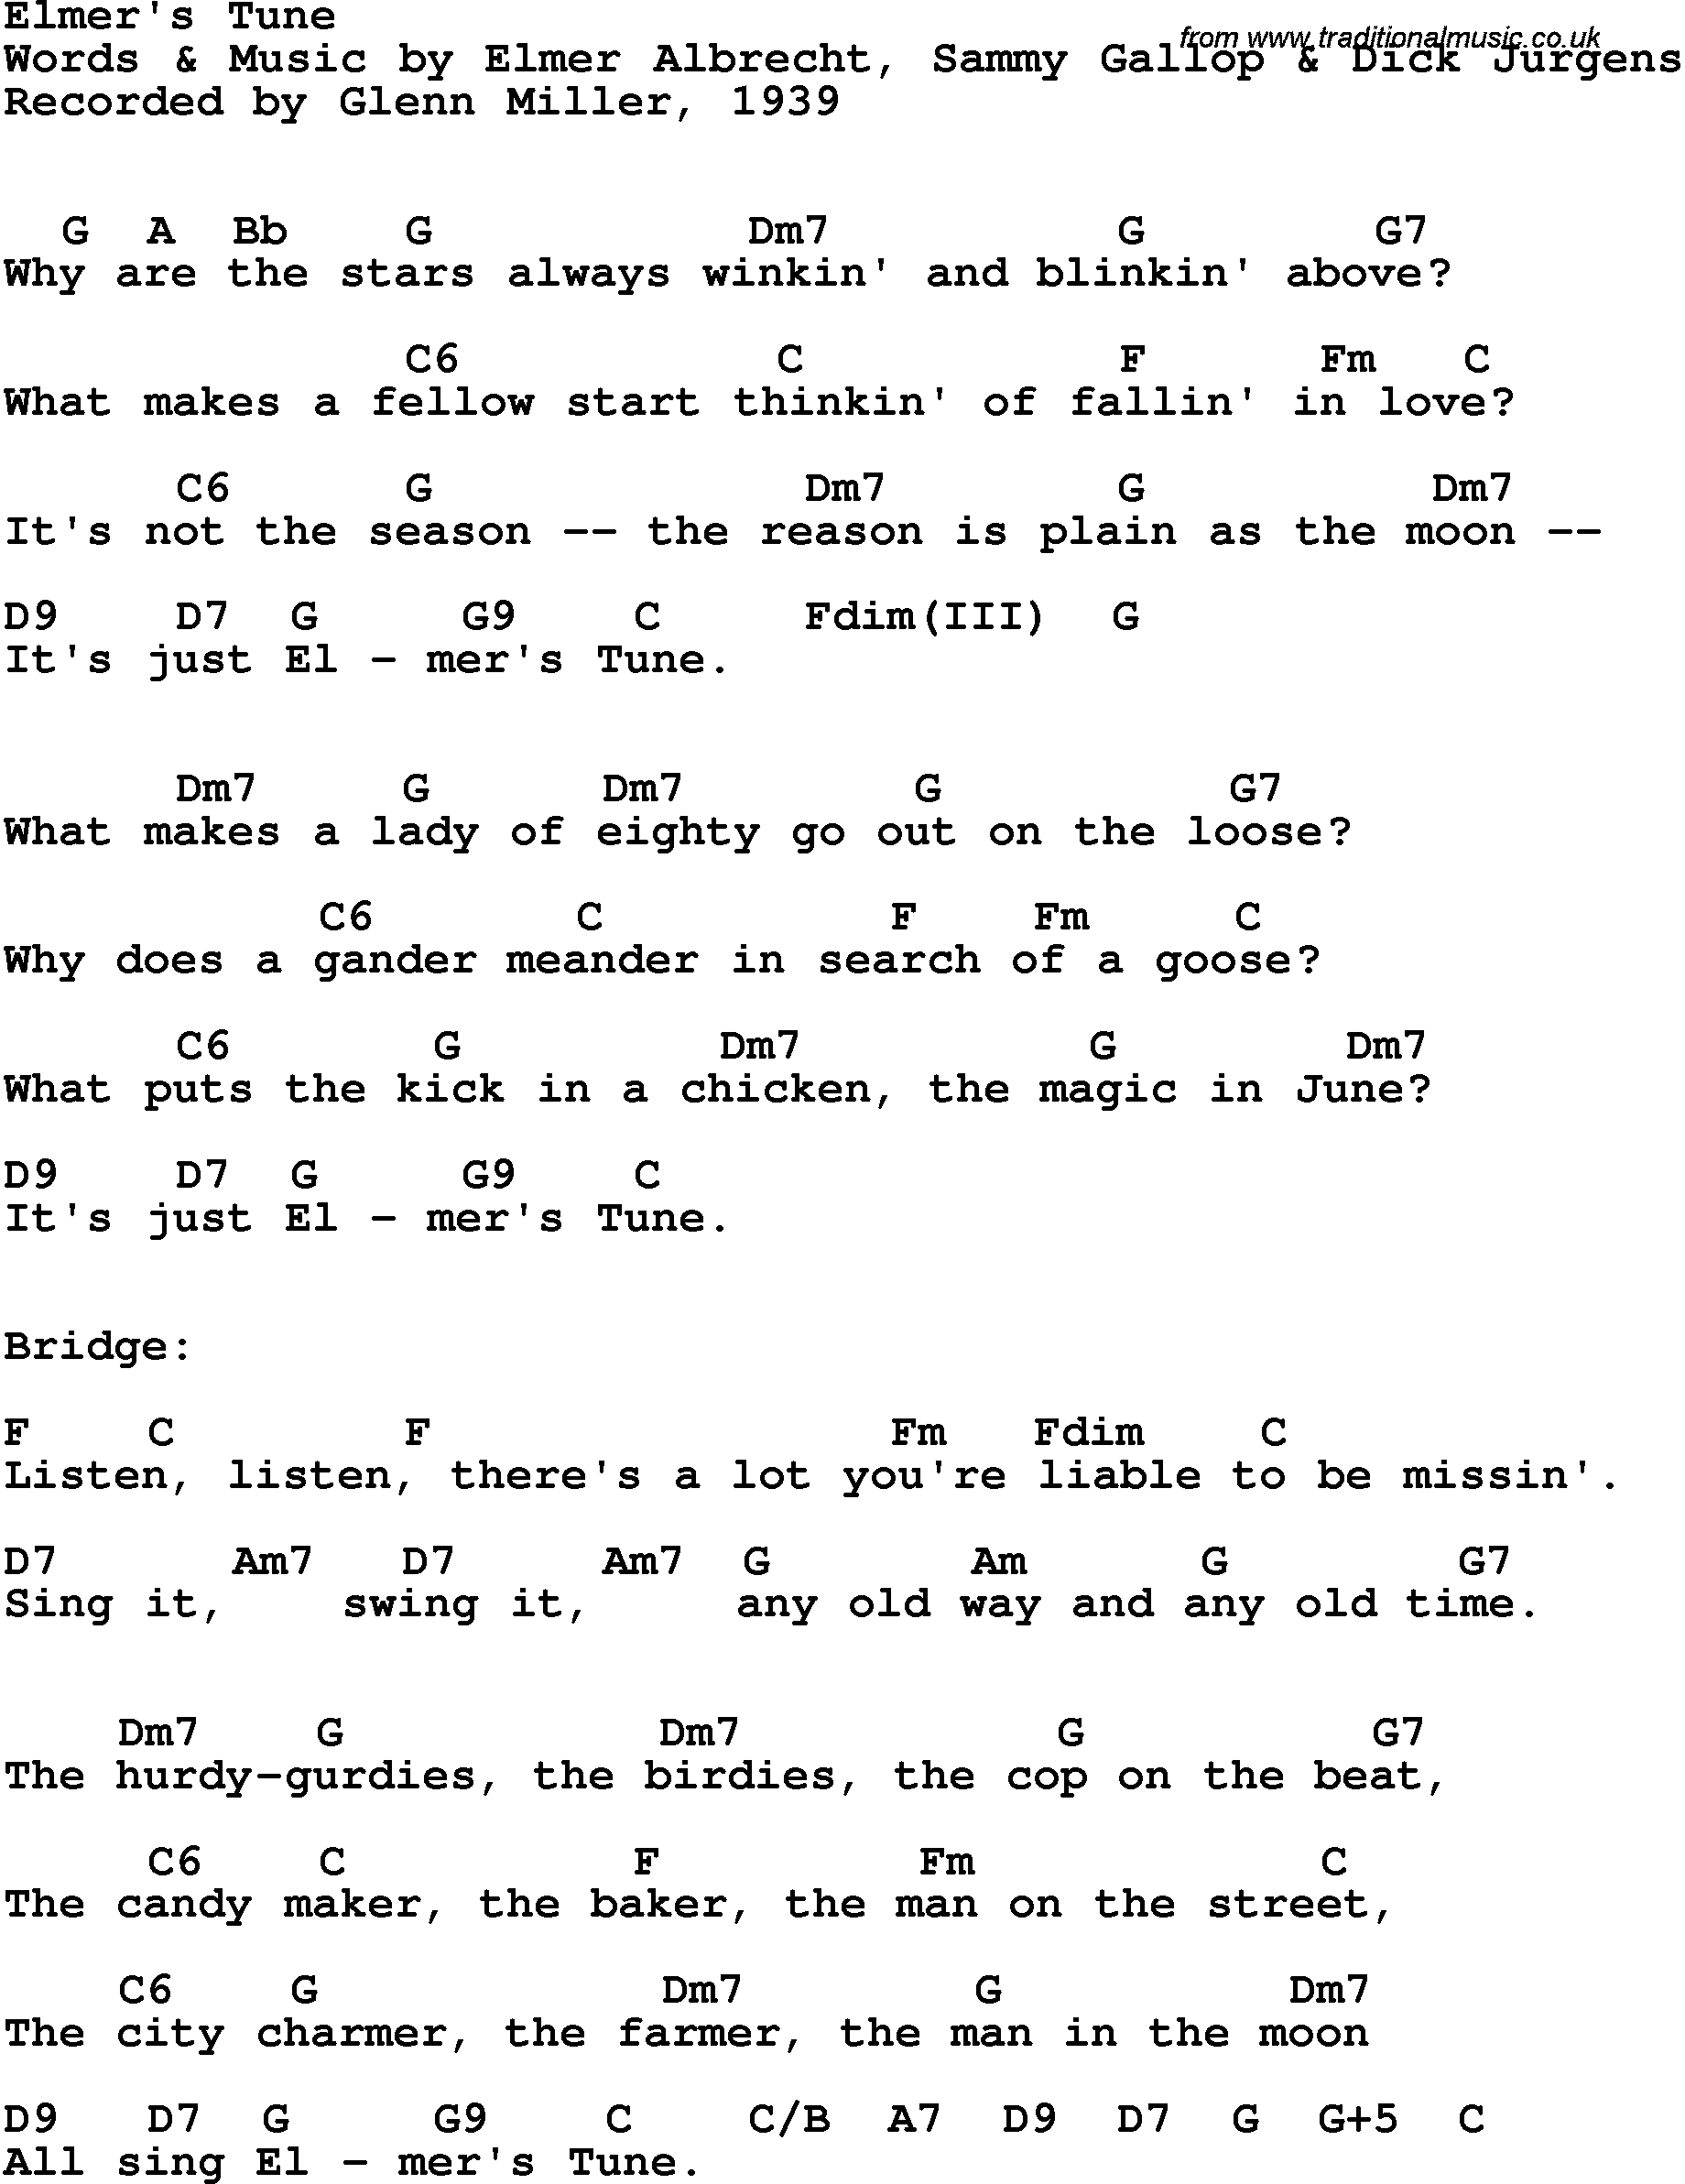 Song Lyrics with guitar chords for Elmer's Tune - Glenn Miller, 1939